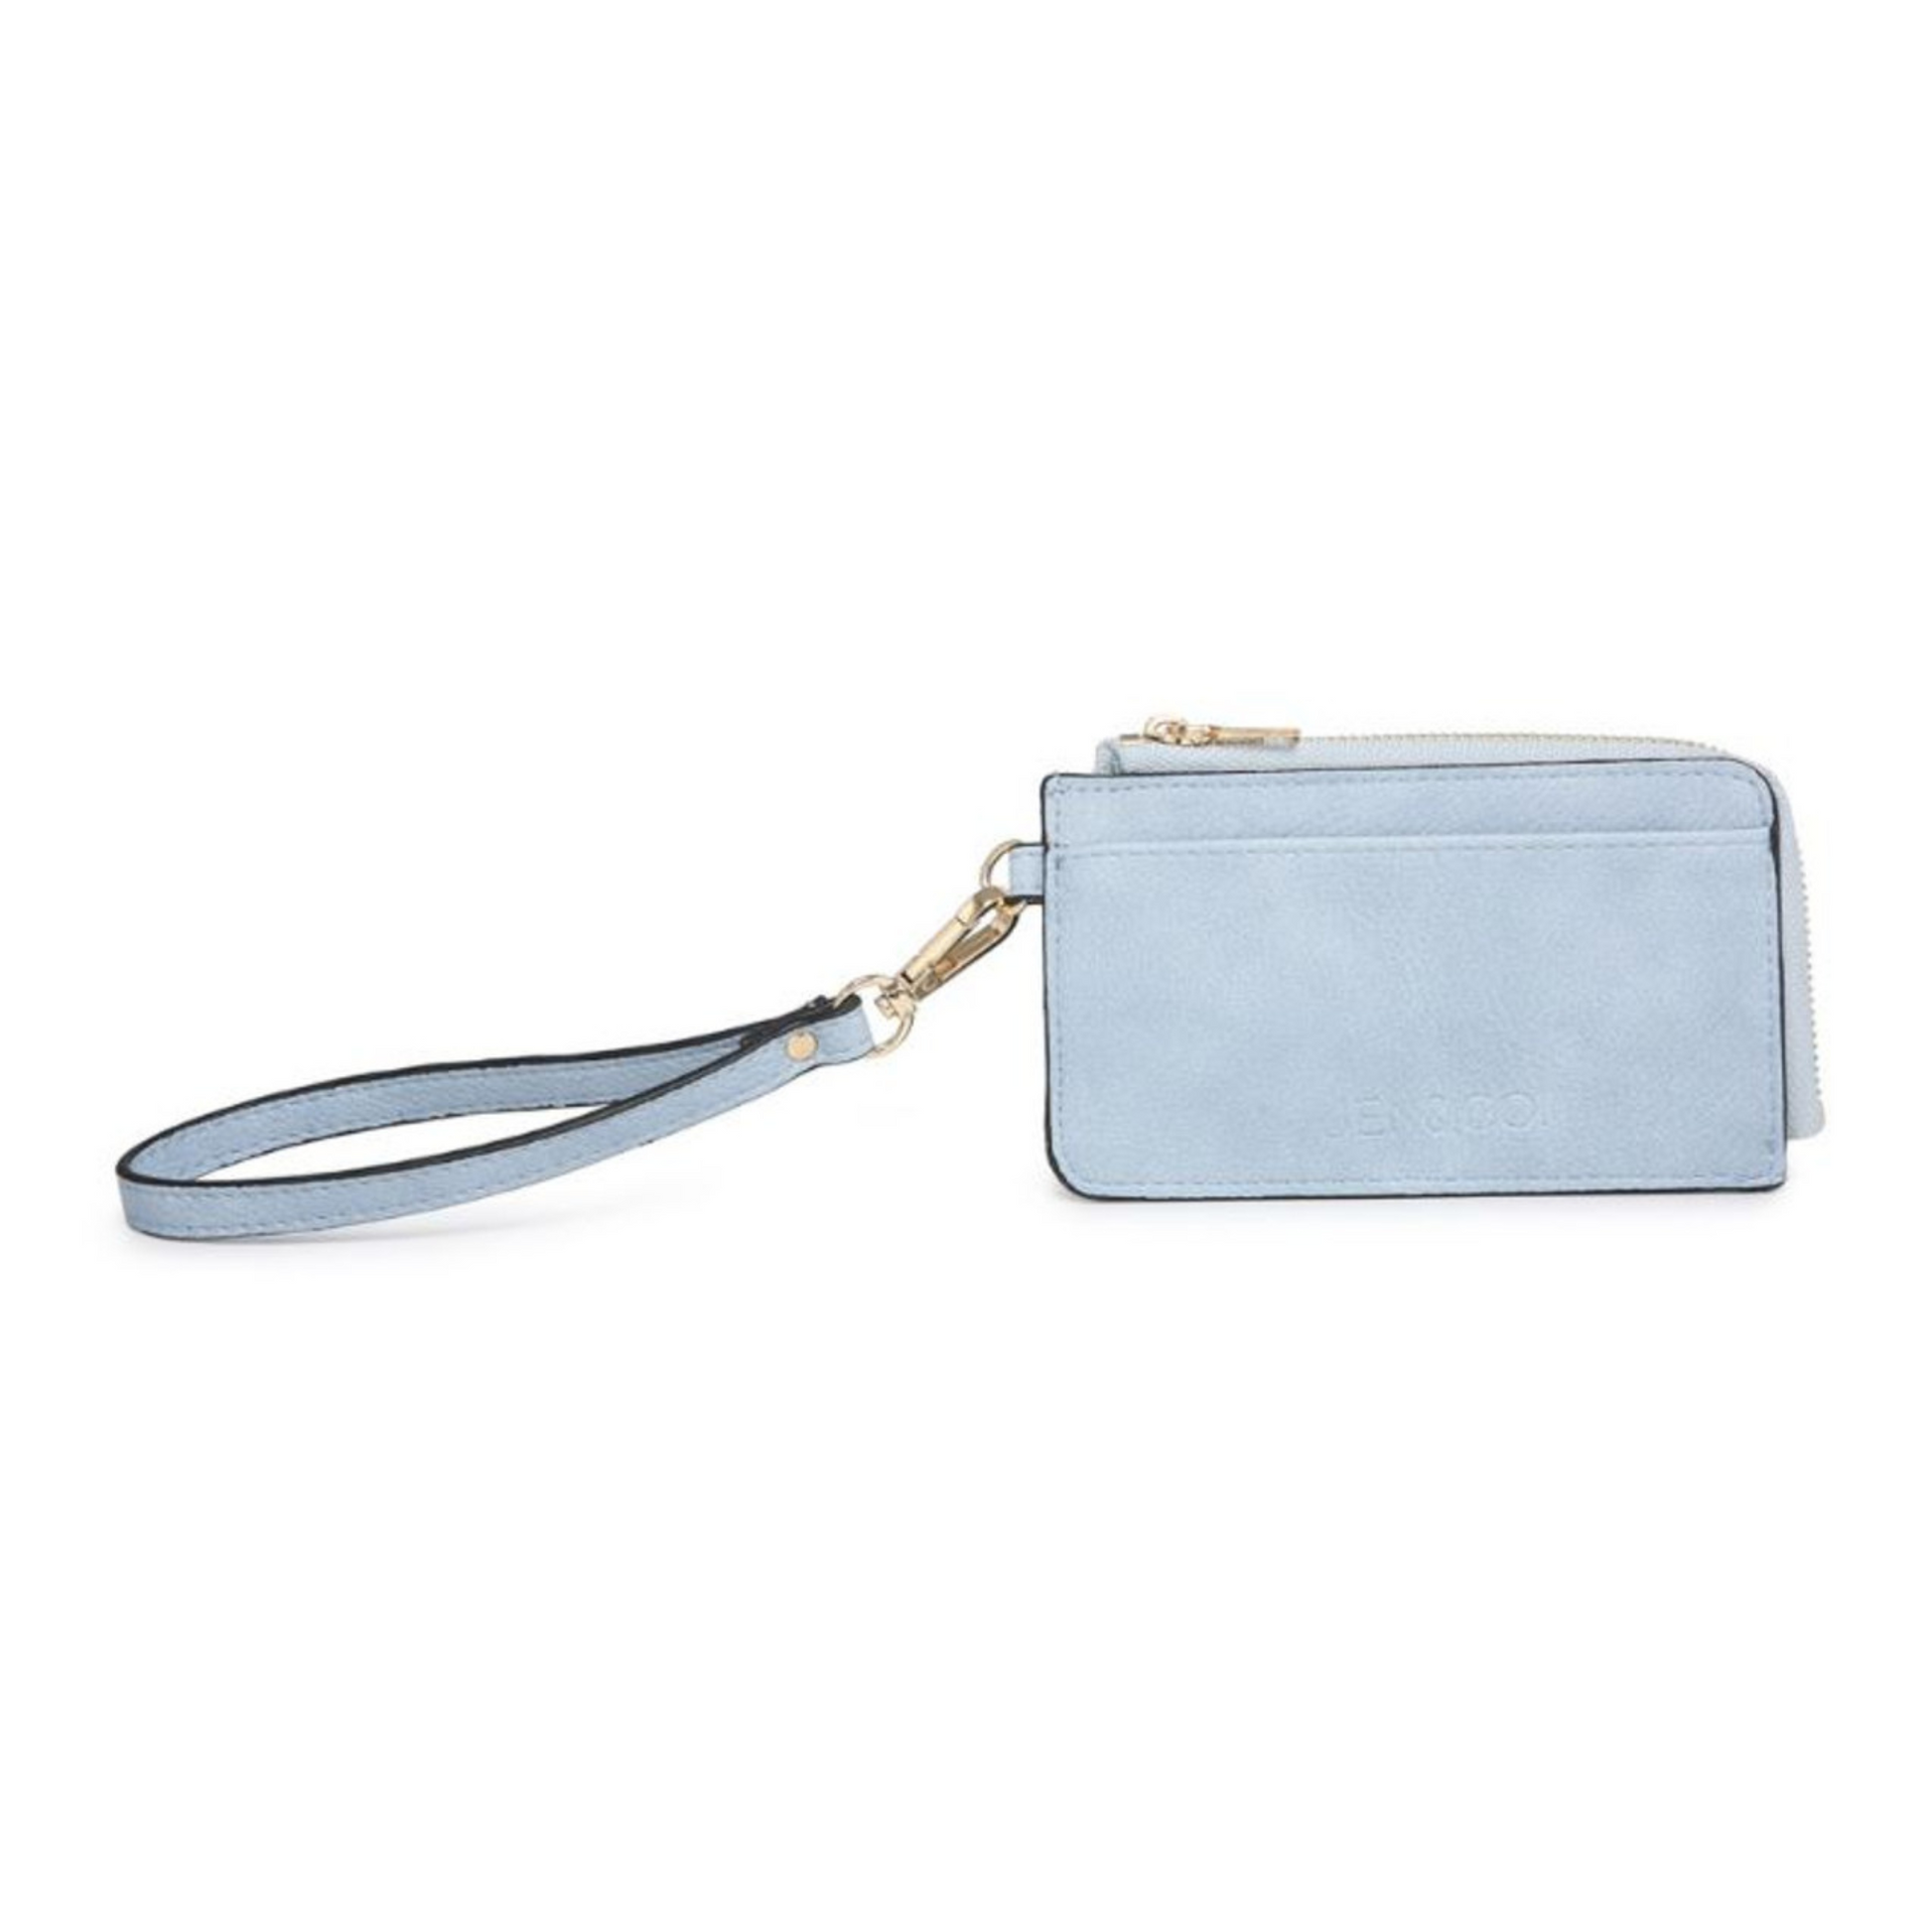 Annalise wallet in cerulean blue